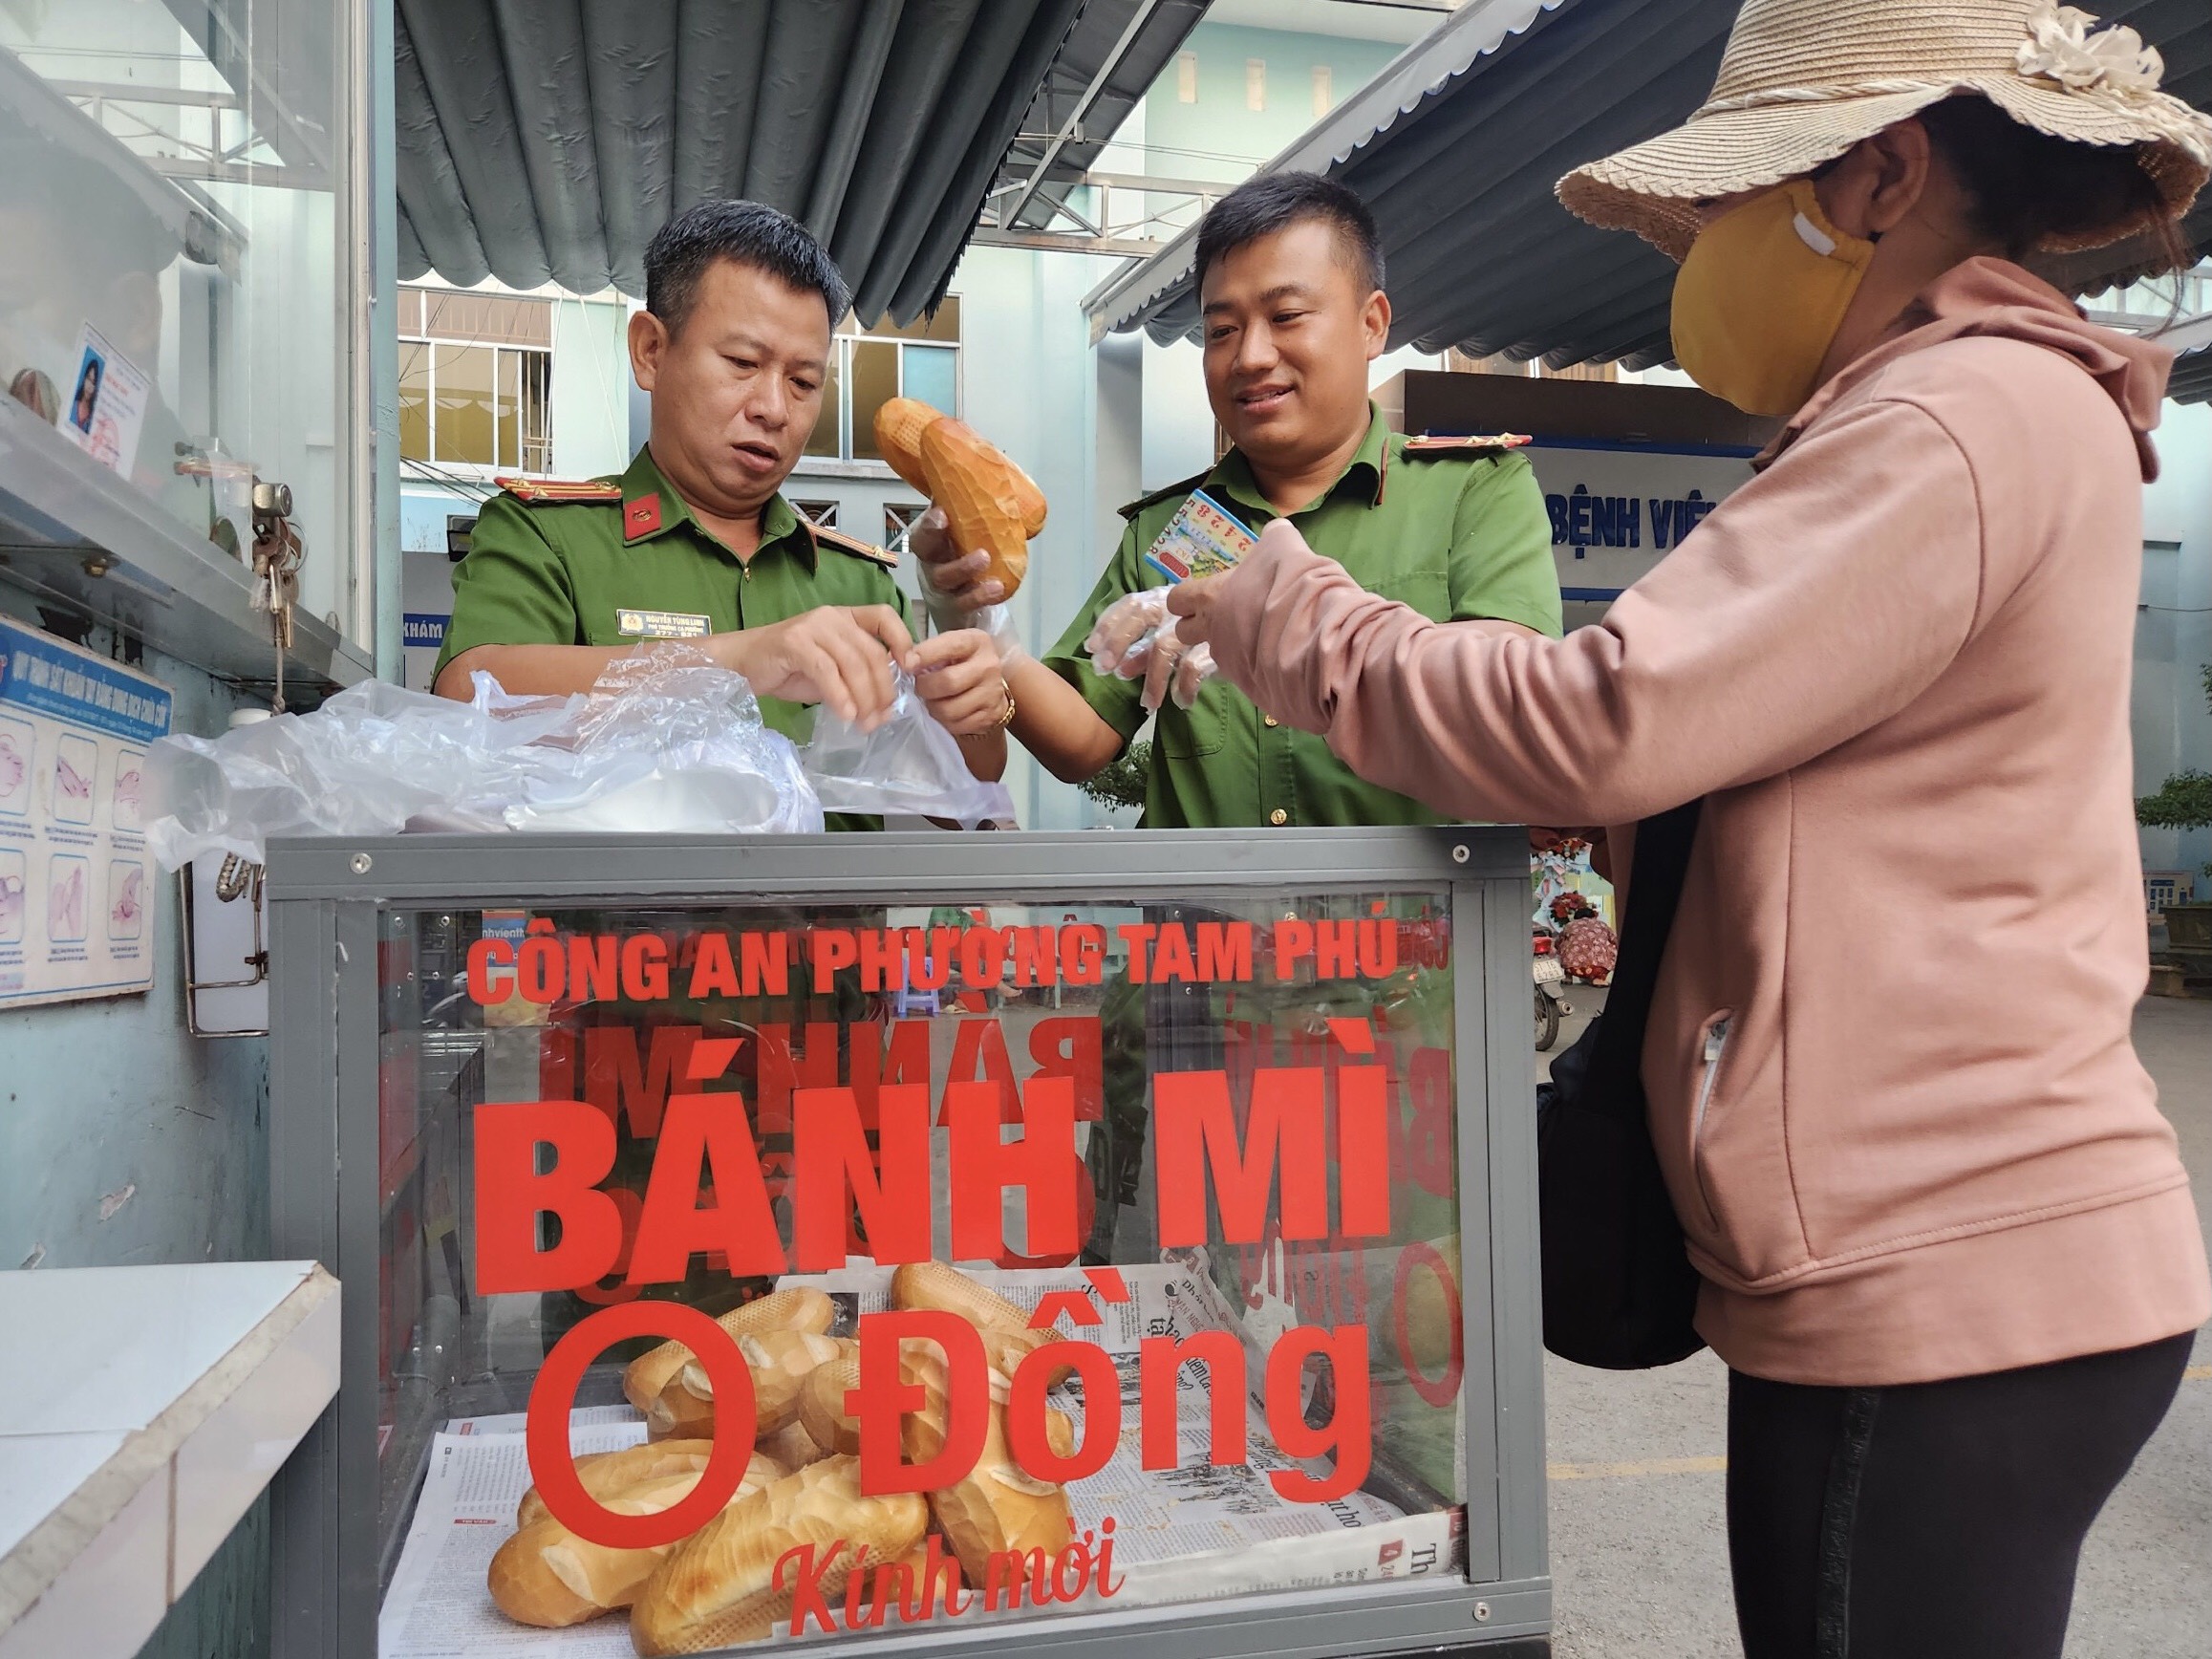 “Tủ bánh mì 0 đồng” của Công an phường Tam Phú, TP Thủ Đức